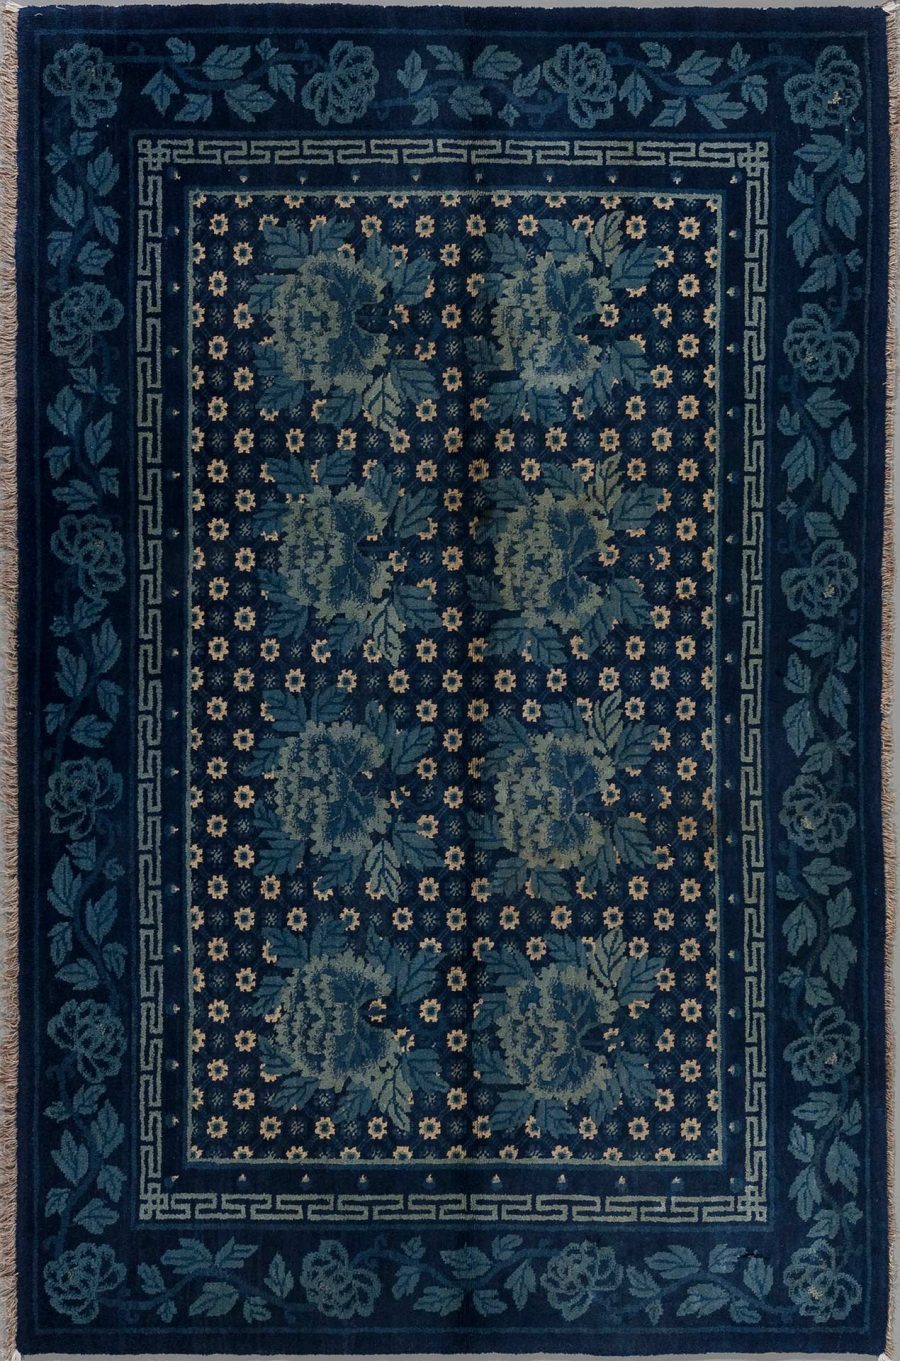 Dunkelblauer Teppich mit traditionellem floralen Muster und griechischem Schlüsselrand in diversen Blautönen und Akzenten in Beige.